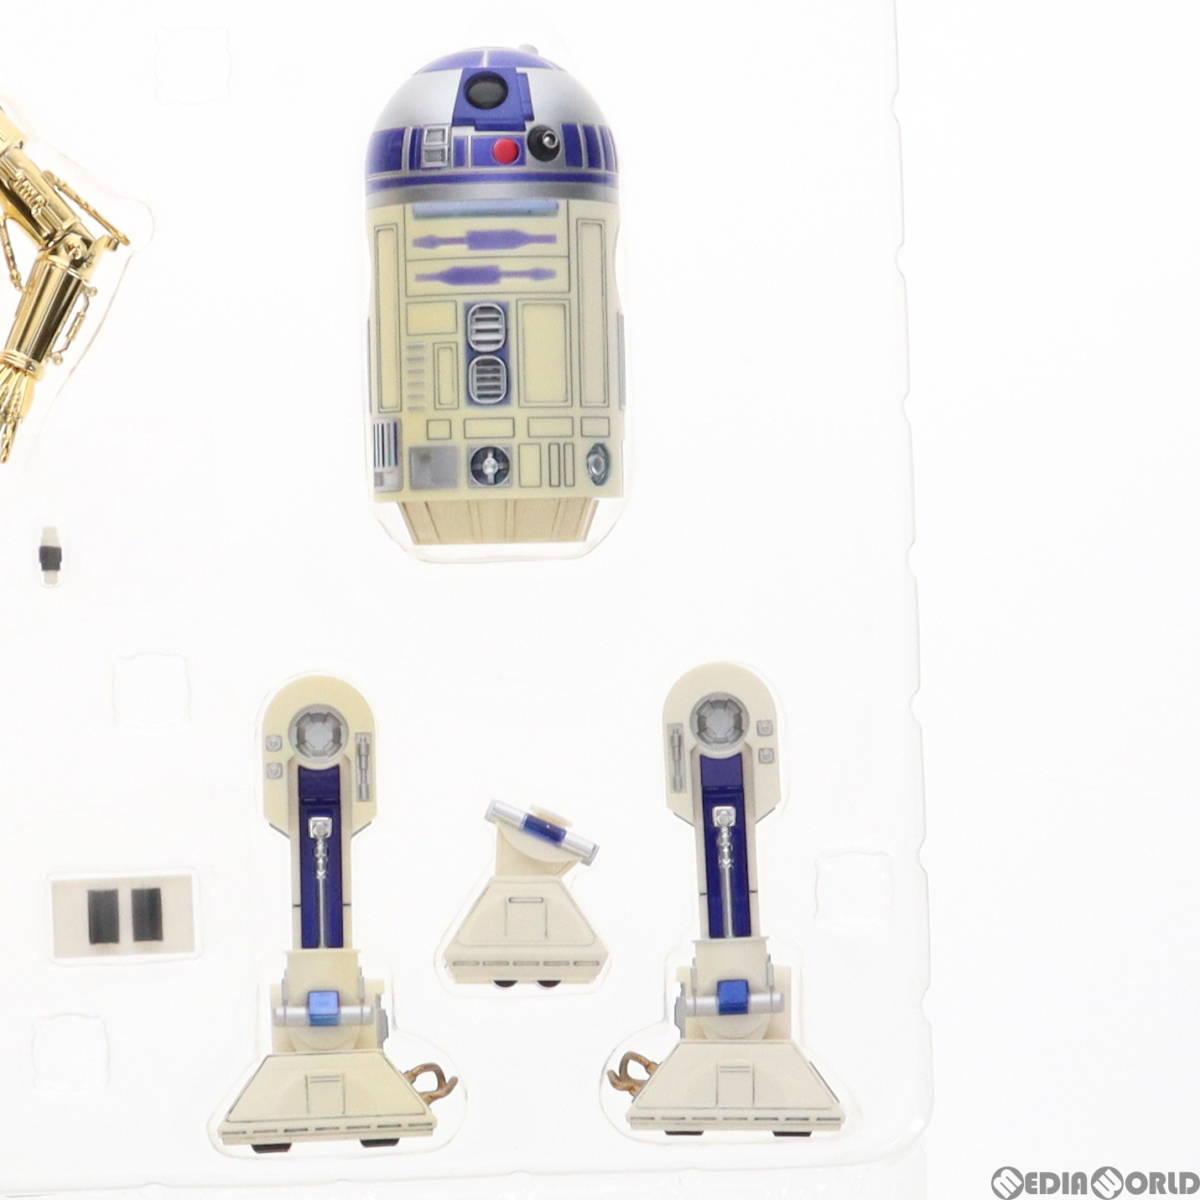 【中古】[FIG]ARTFX+ R2-D2&C-3PO STAR WARS(スターウォーズ) 簡易組立キット フィギュア コトブキヤ(61129160)_画像5